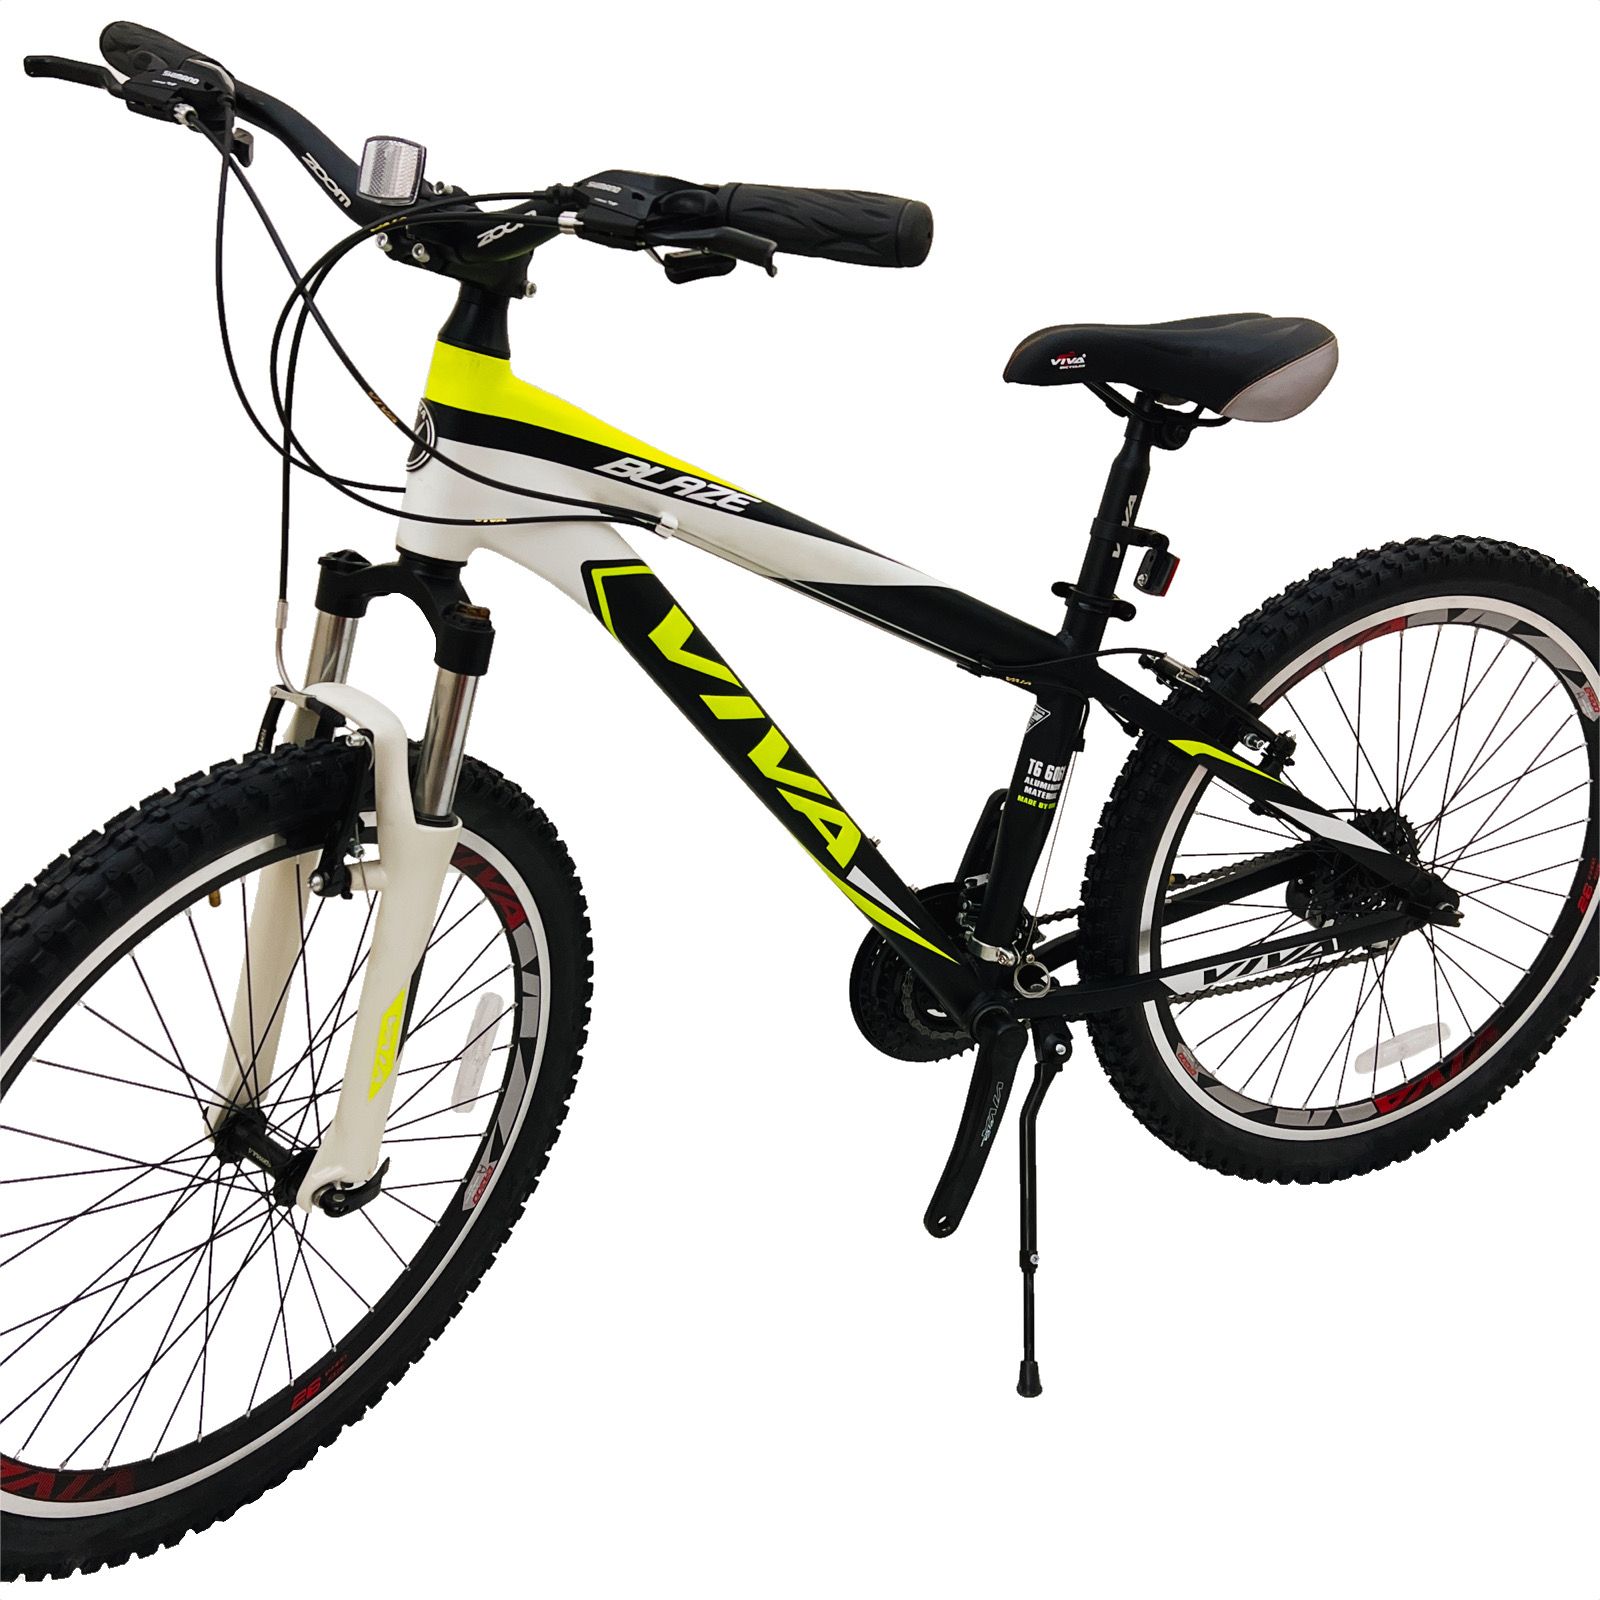 دوچرخه کوهستان ویوا مدل BLAZE کد 15 سایز 26 -  - 6